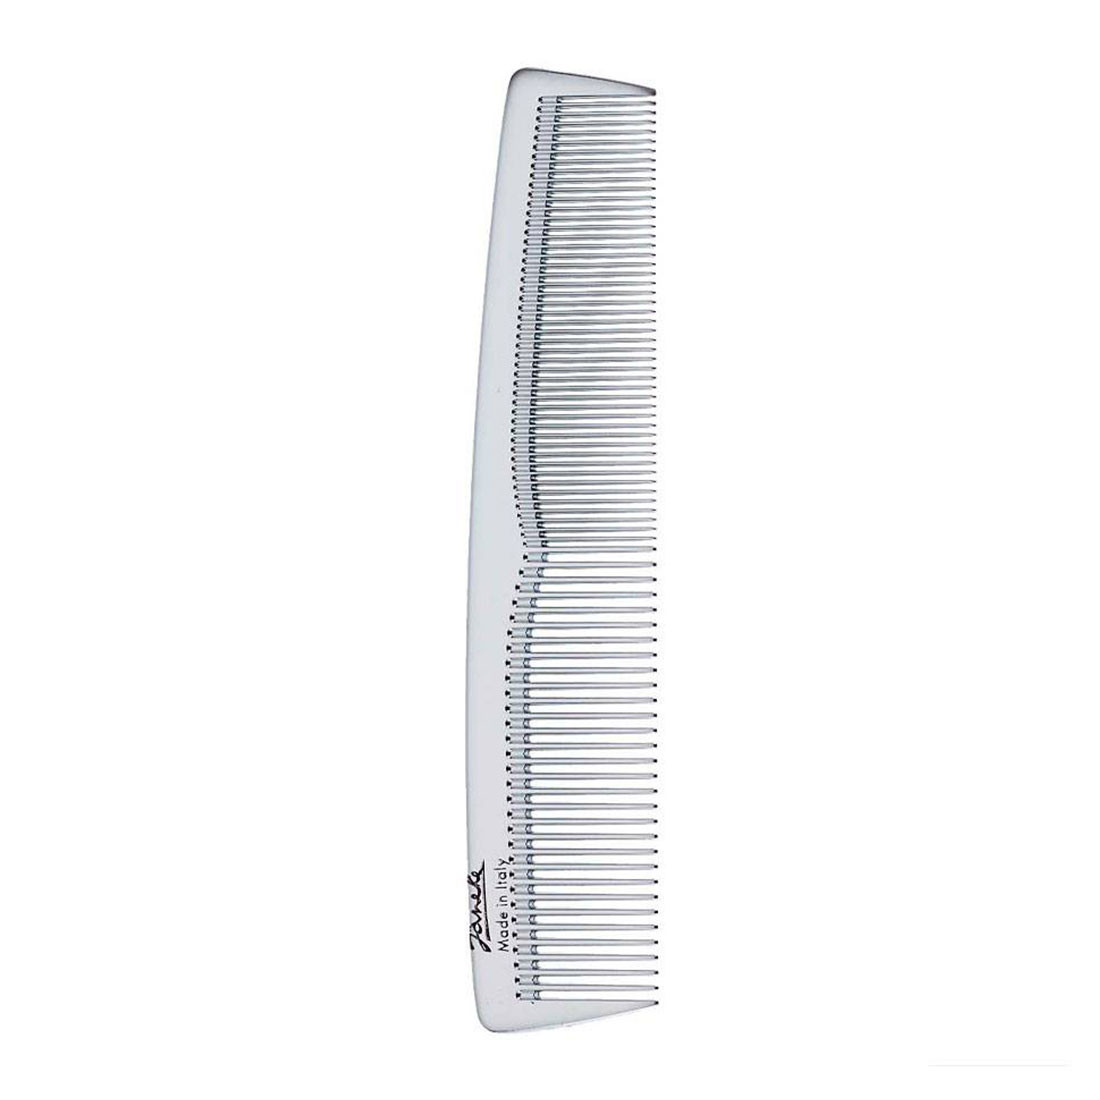 Срібний гребінець для волосся великий Janeke 1830 Chrome Toilette Comb Bigger Size